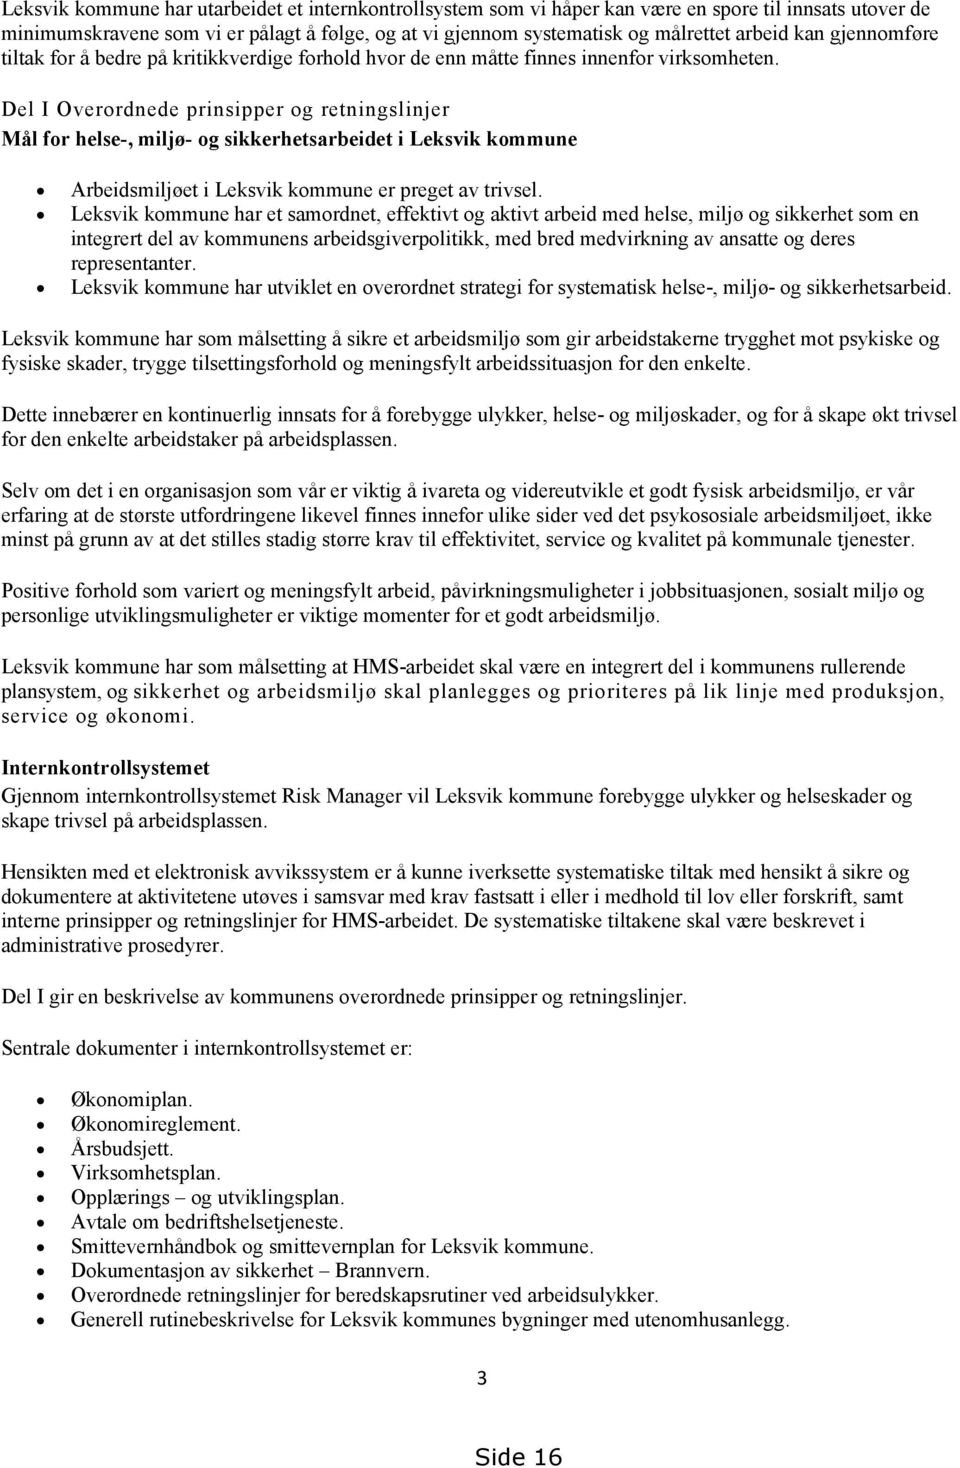 Del I Overordnede prinsipper og retningslinjer Mål for helse-, miljø- og sikkerhetsarbeidet i Leksvik kommune Arbeidsmiljøet i Leksvik kommune er preget av trivsel.